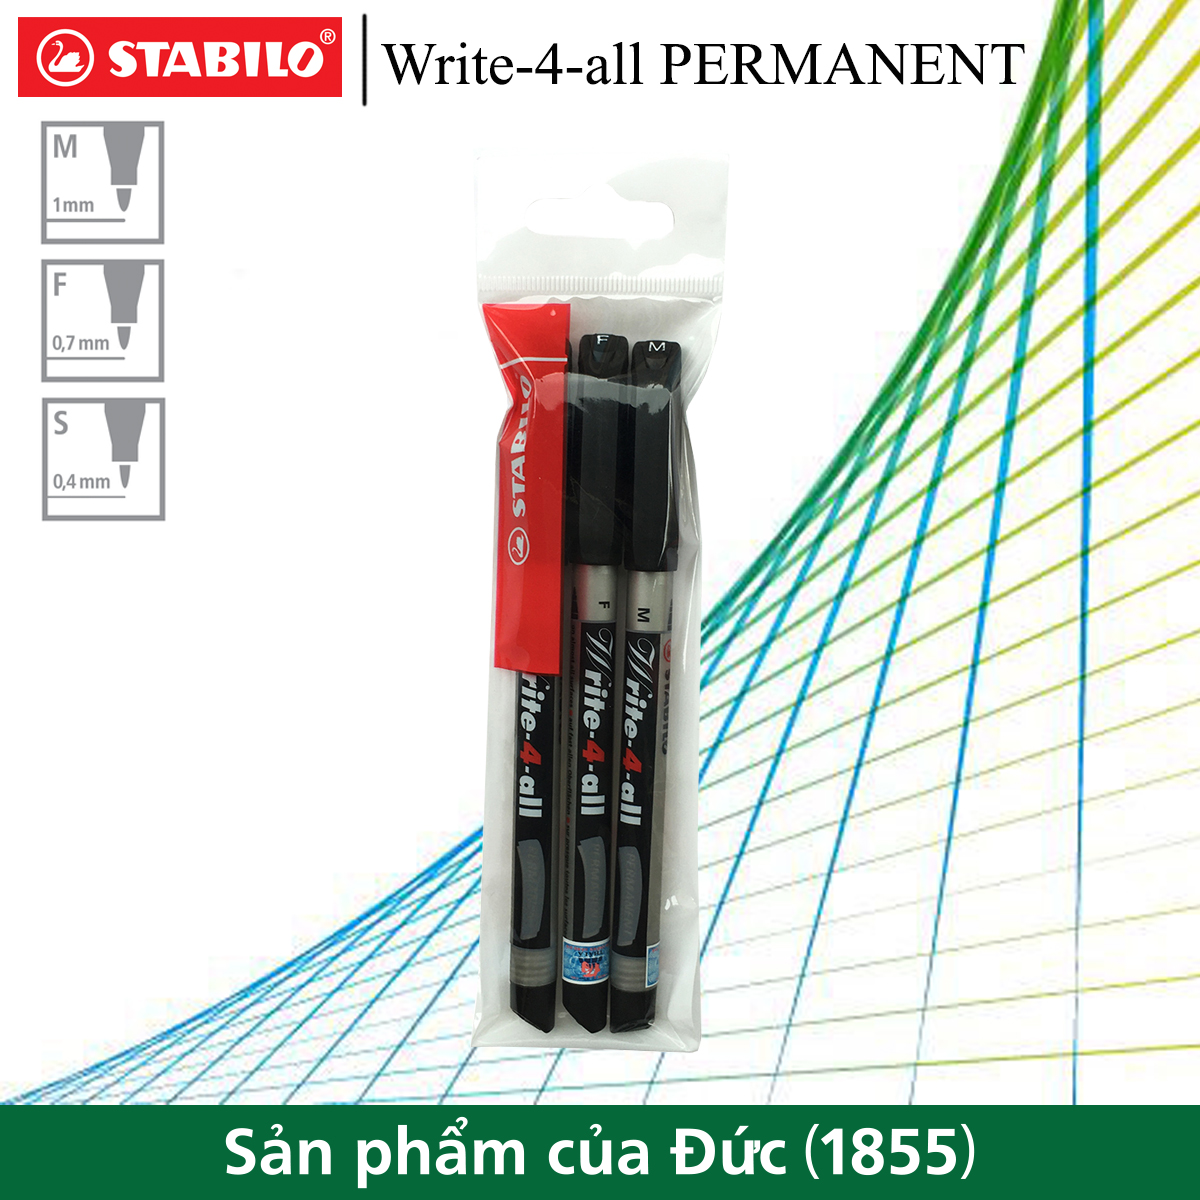 Bộ 3 bút kỹ thuật STABILO Write-4-all PERMANENT M/F/S (3 nét/màu)